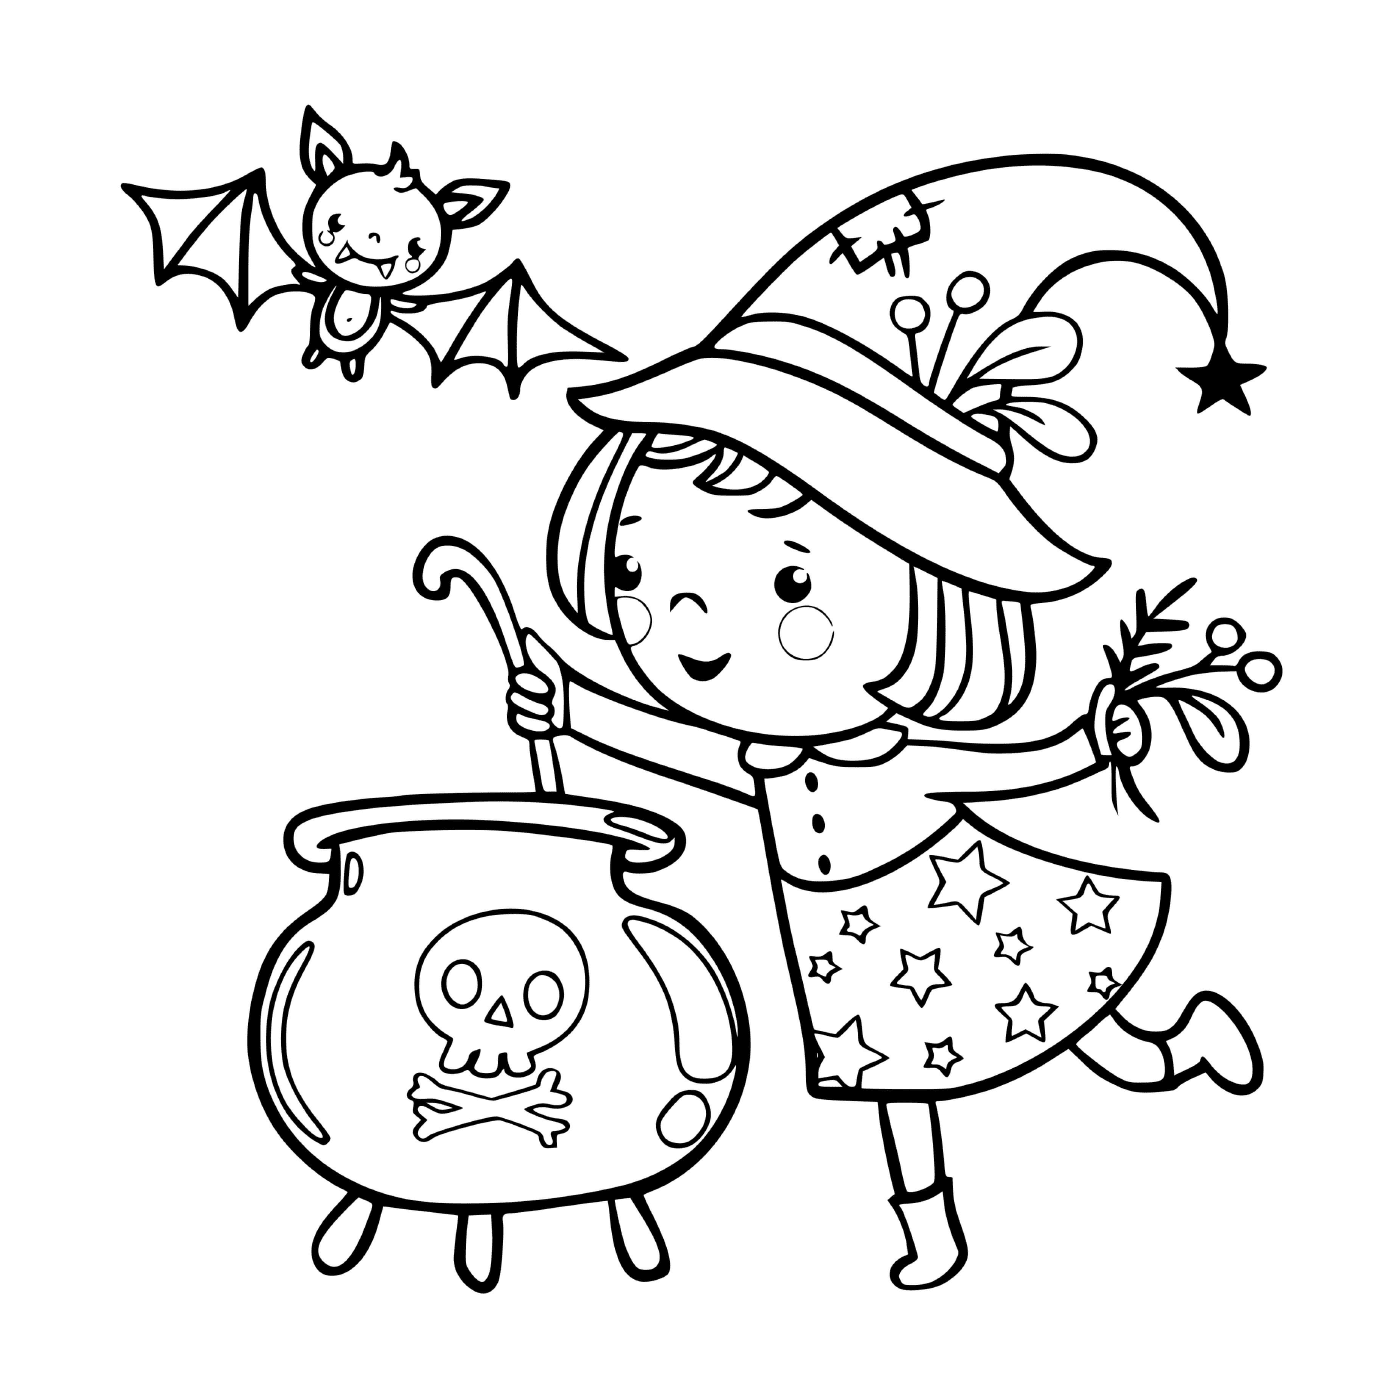  小巫婆准备一碗魔汤 